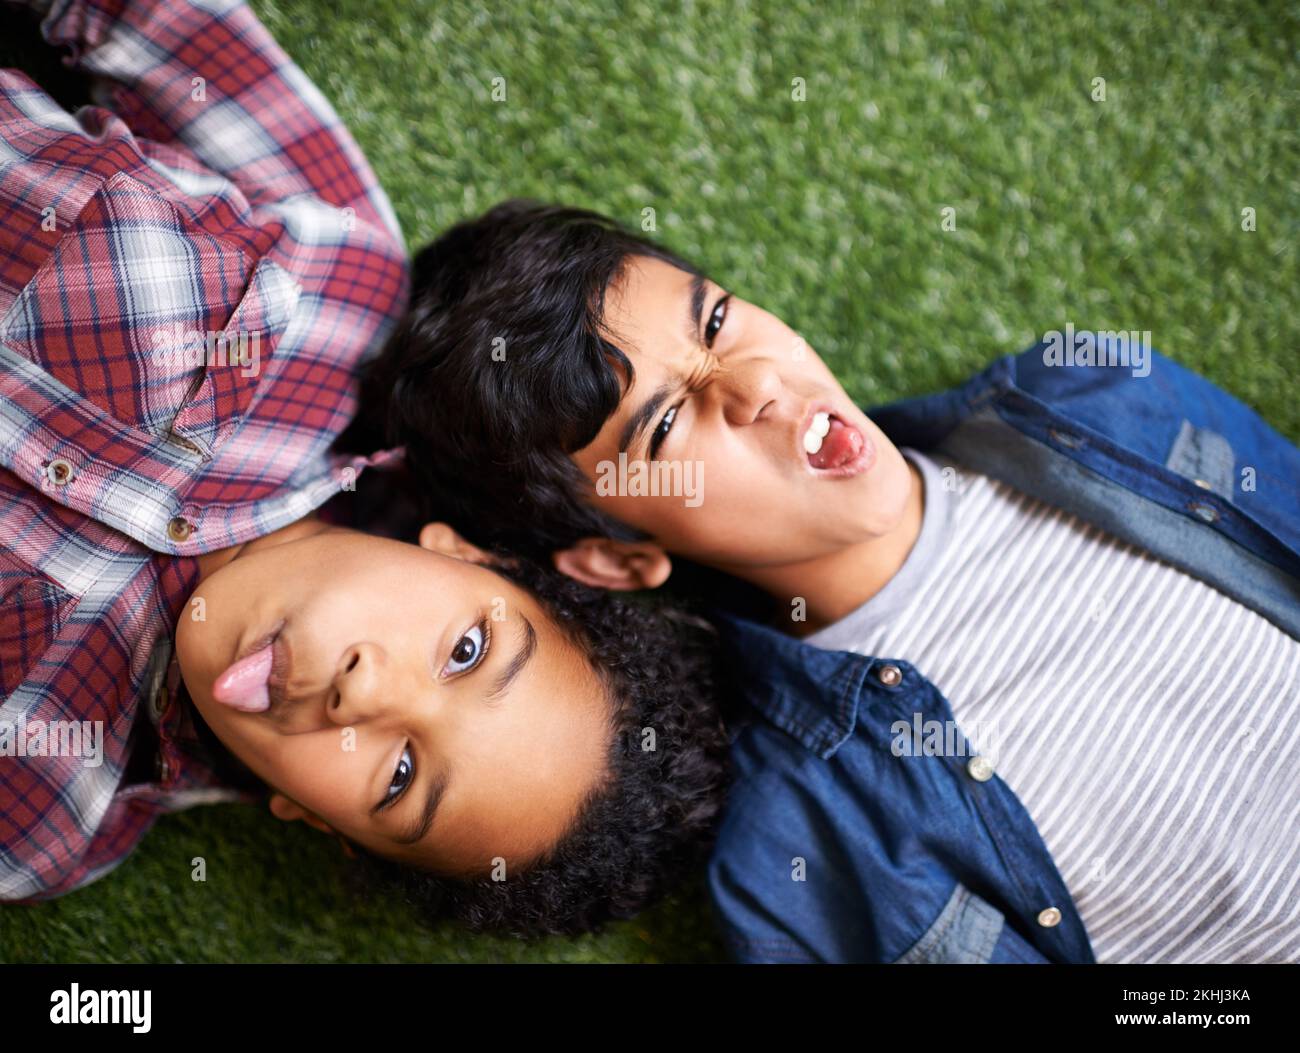 Ein bisschen Geschwister-Dummheit. Ein Bruder und eine Schwester, die auf dem Rasen liegen. Stockfoto